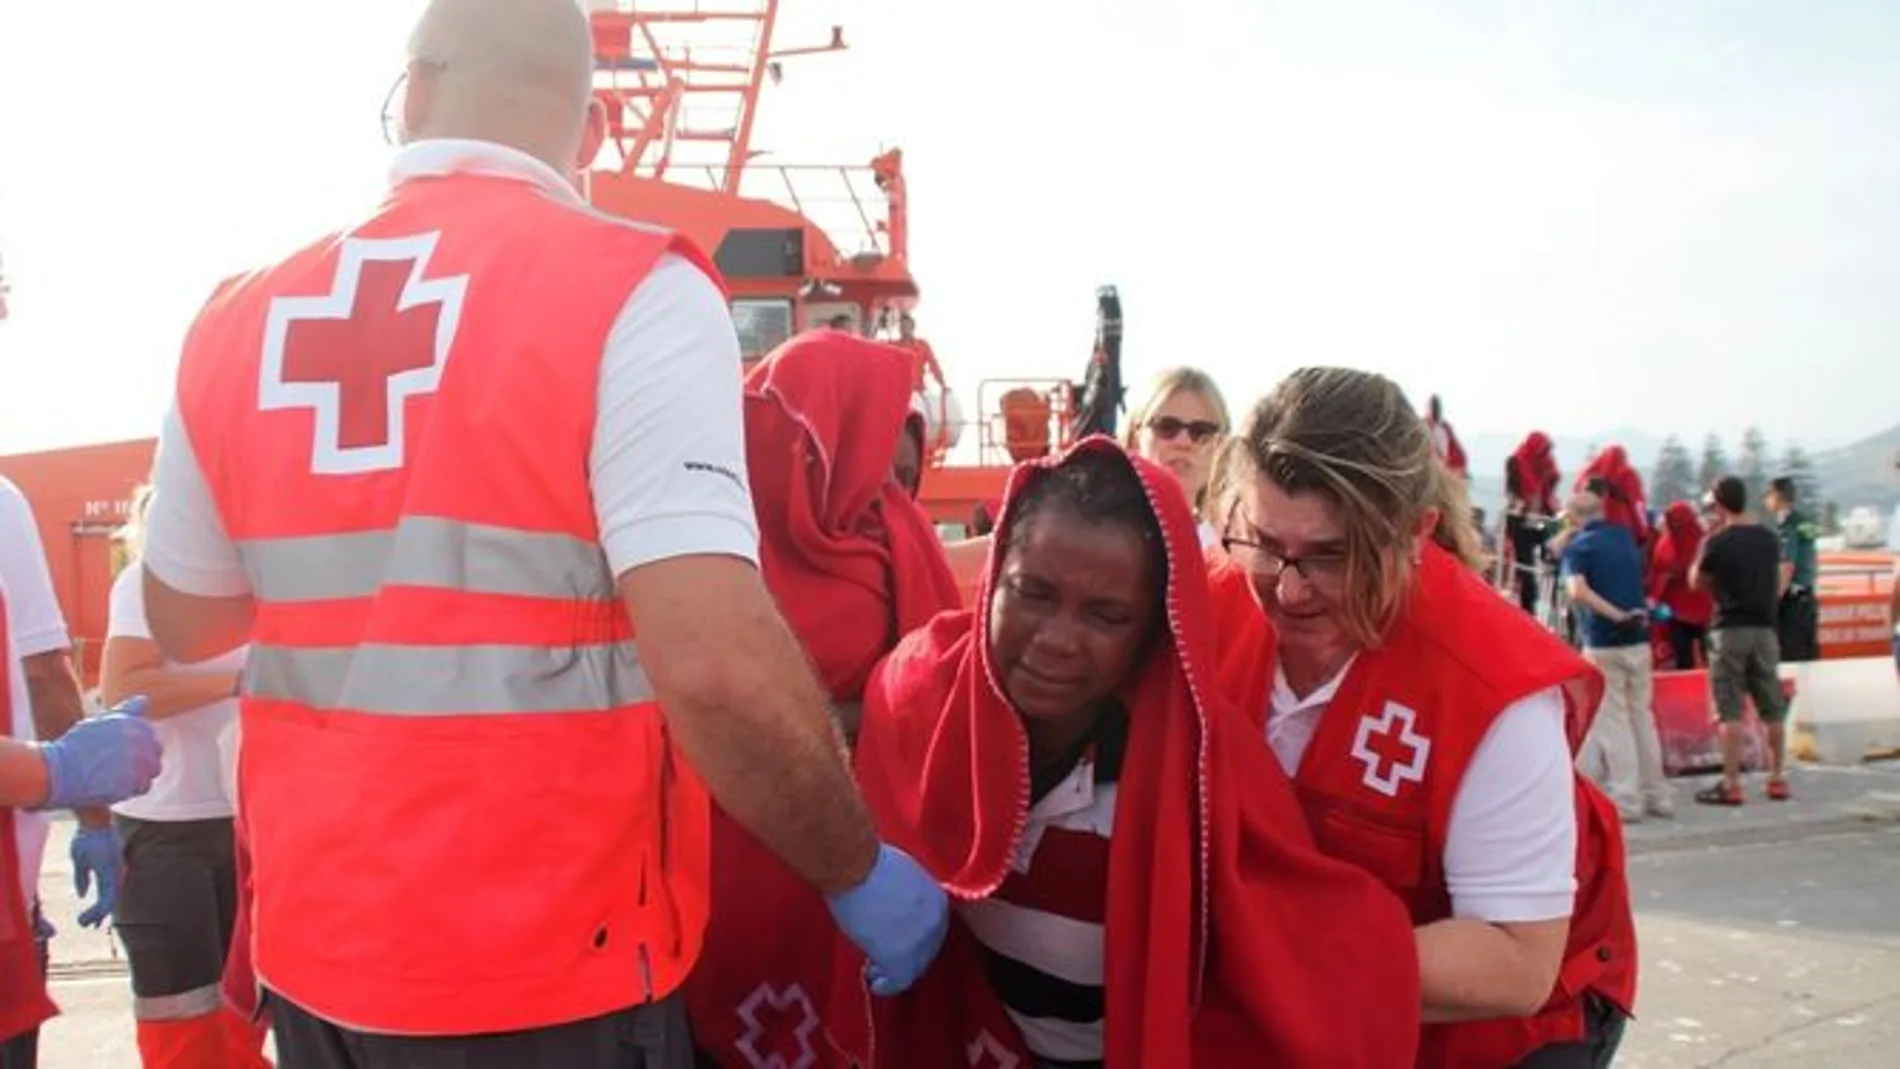 Cruz Roja se encarga de la primera ayuda humanitaria a los inmigrantes y refugiados que llegan a las costas andaluzas